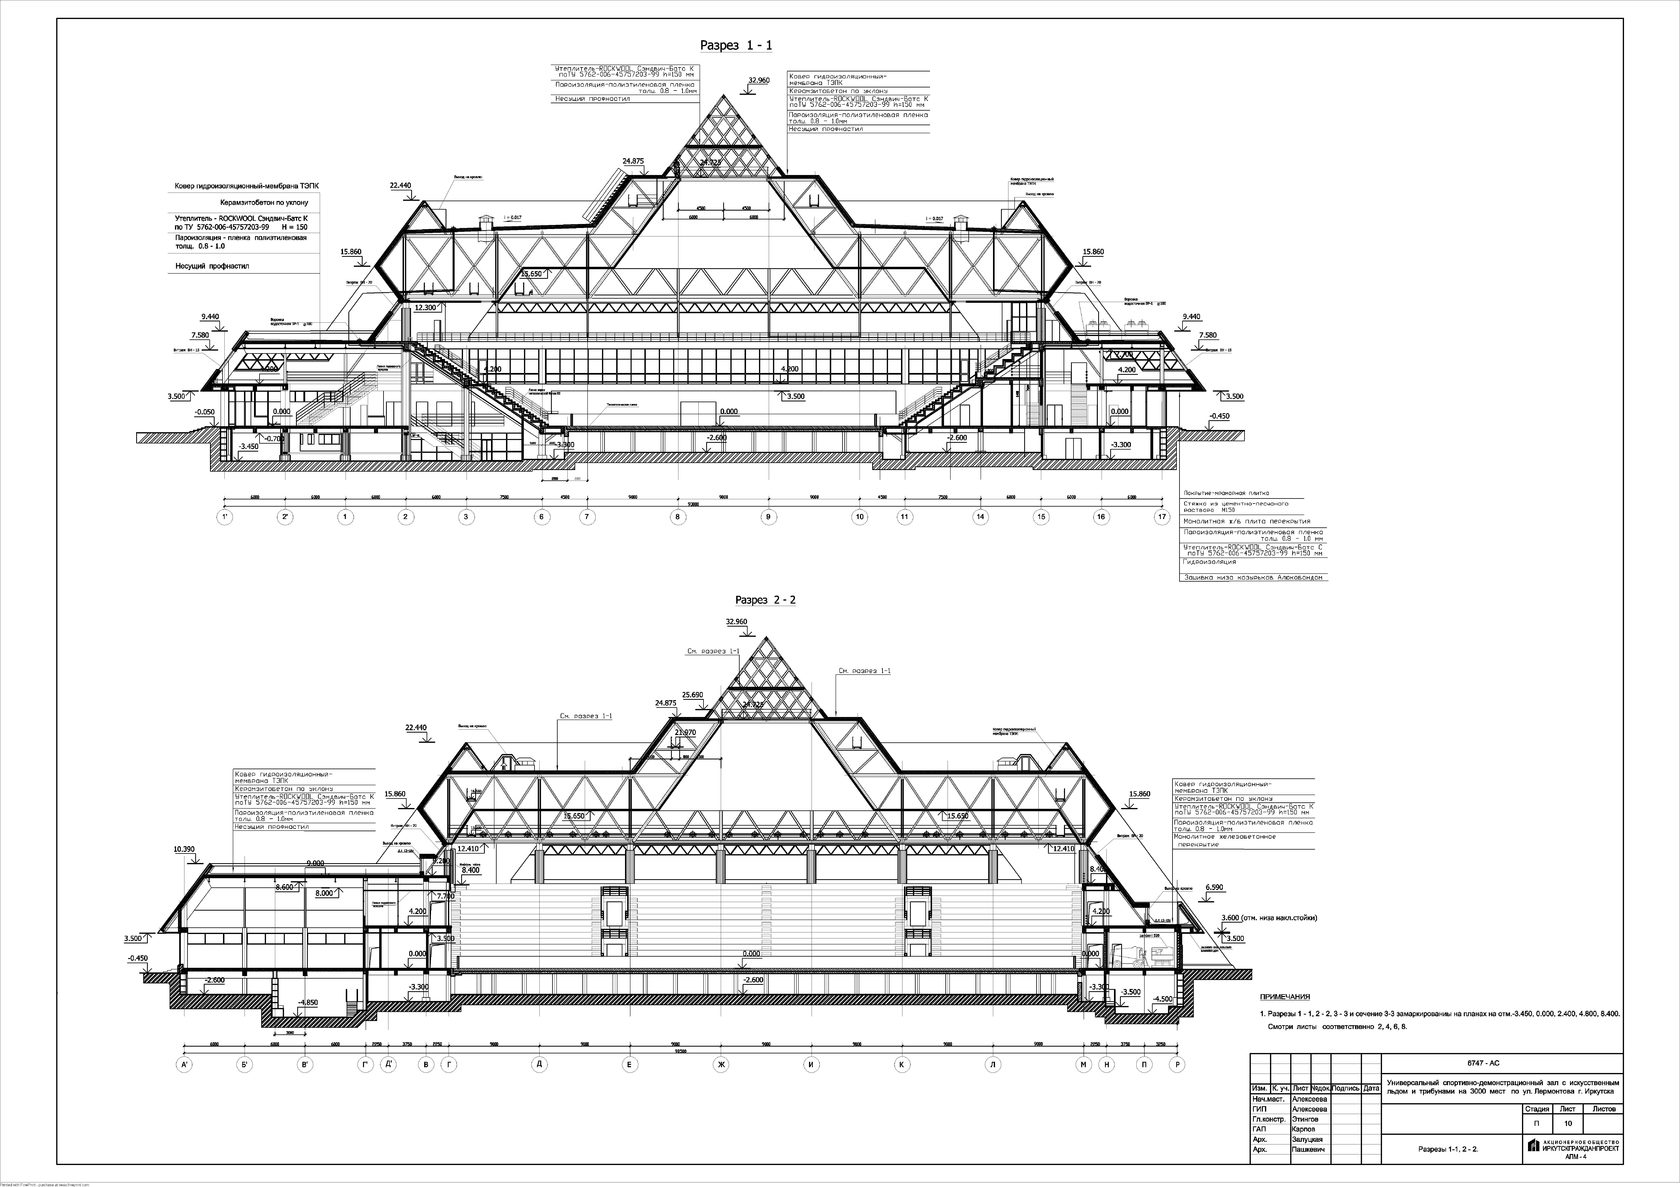 ледовый дворец айсберг сочи схема зала с местами